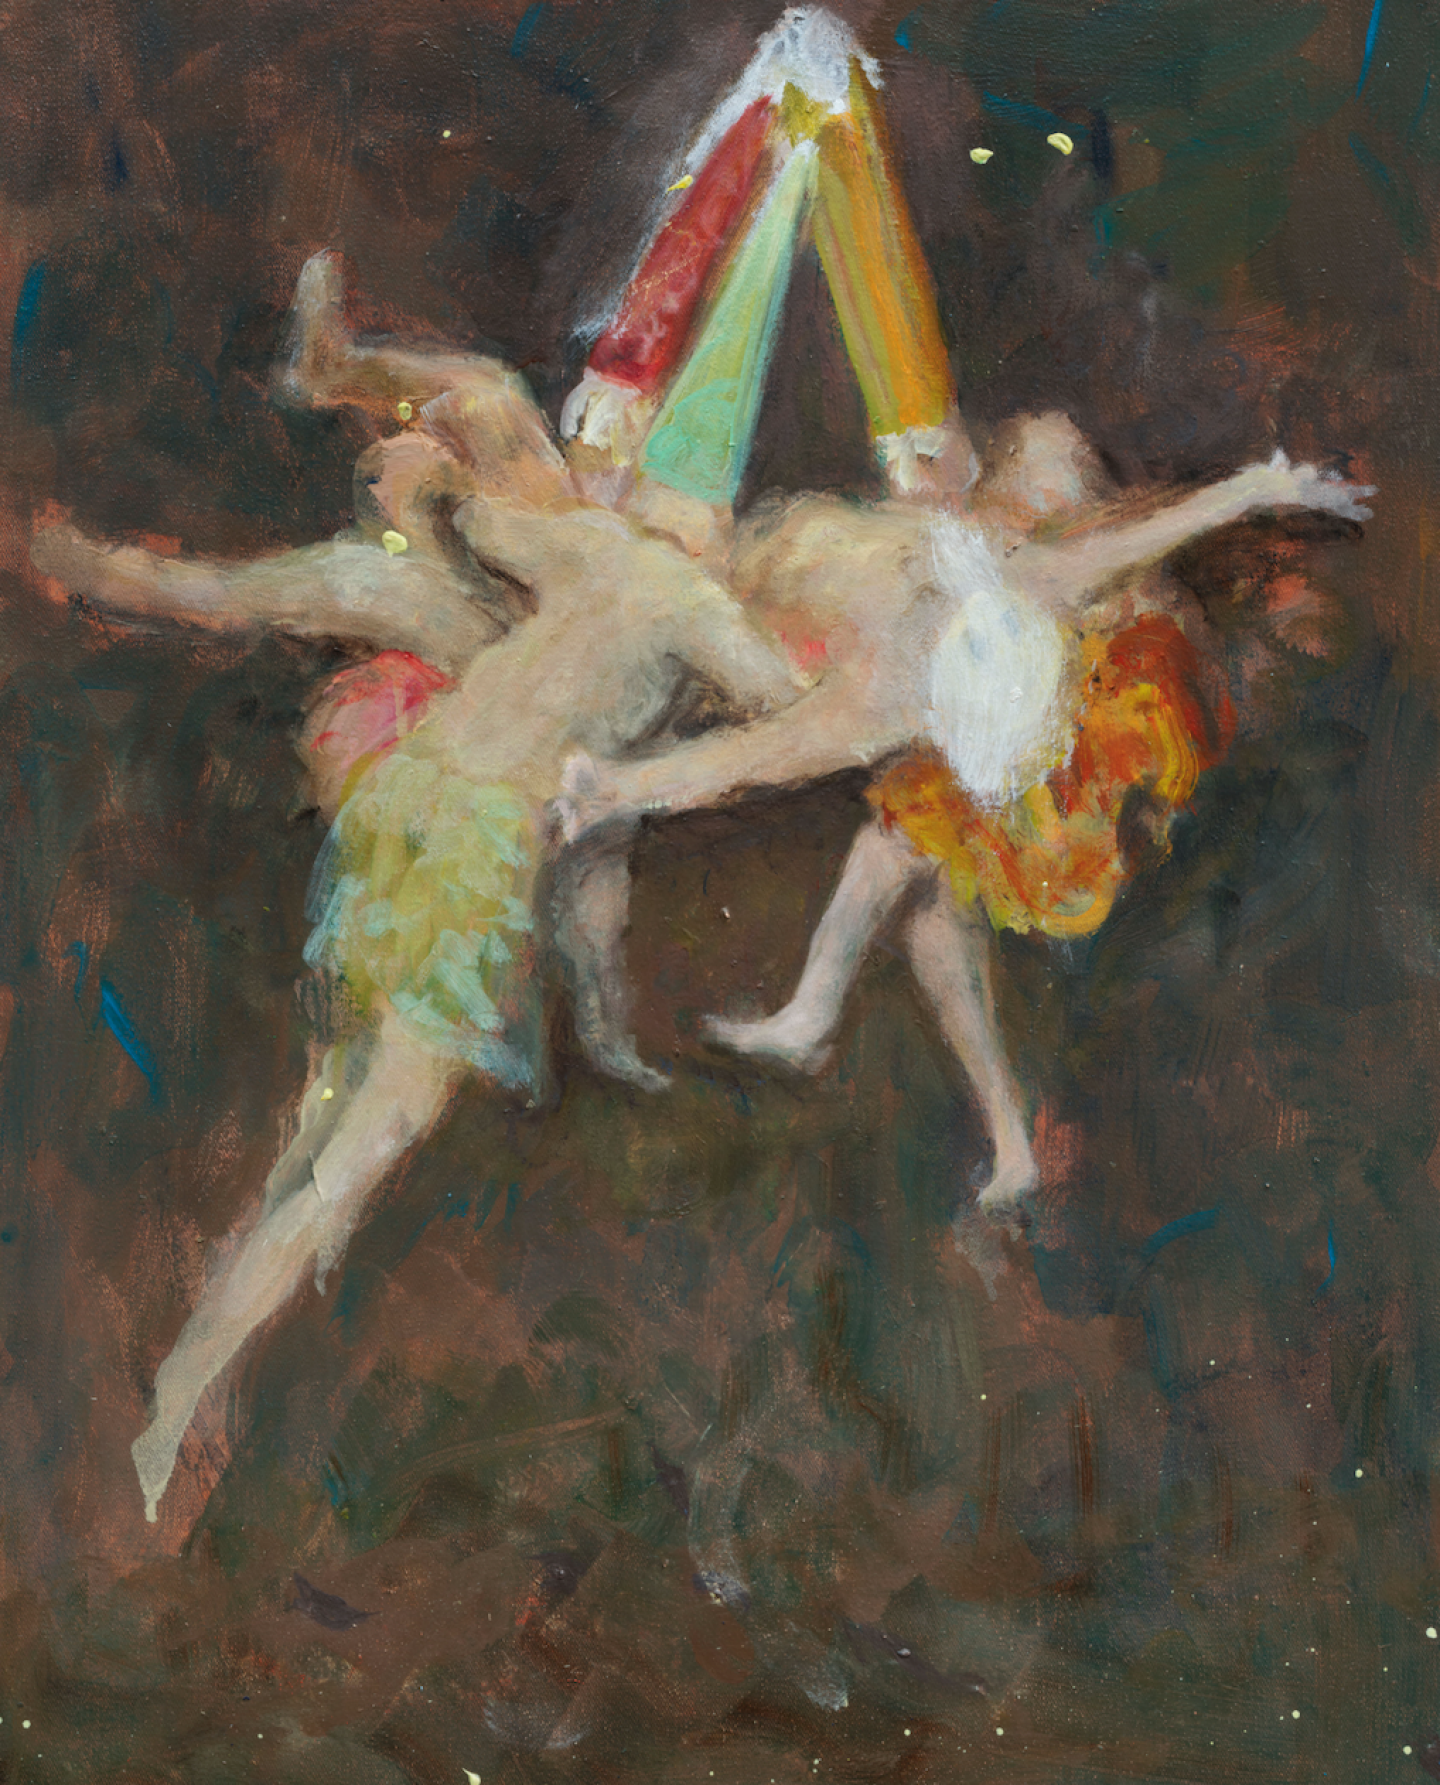  Valérie Favre, Les sorcières de Goya/Hexenflug, Huile sur toile, 50x40 cm, 2020